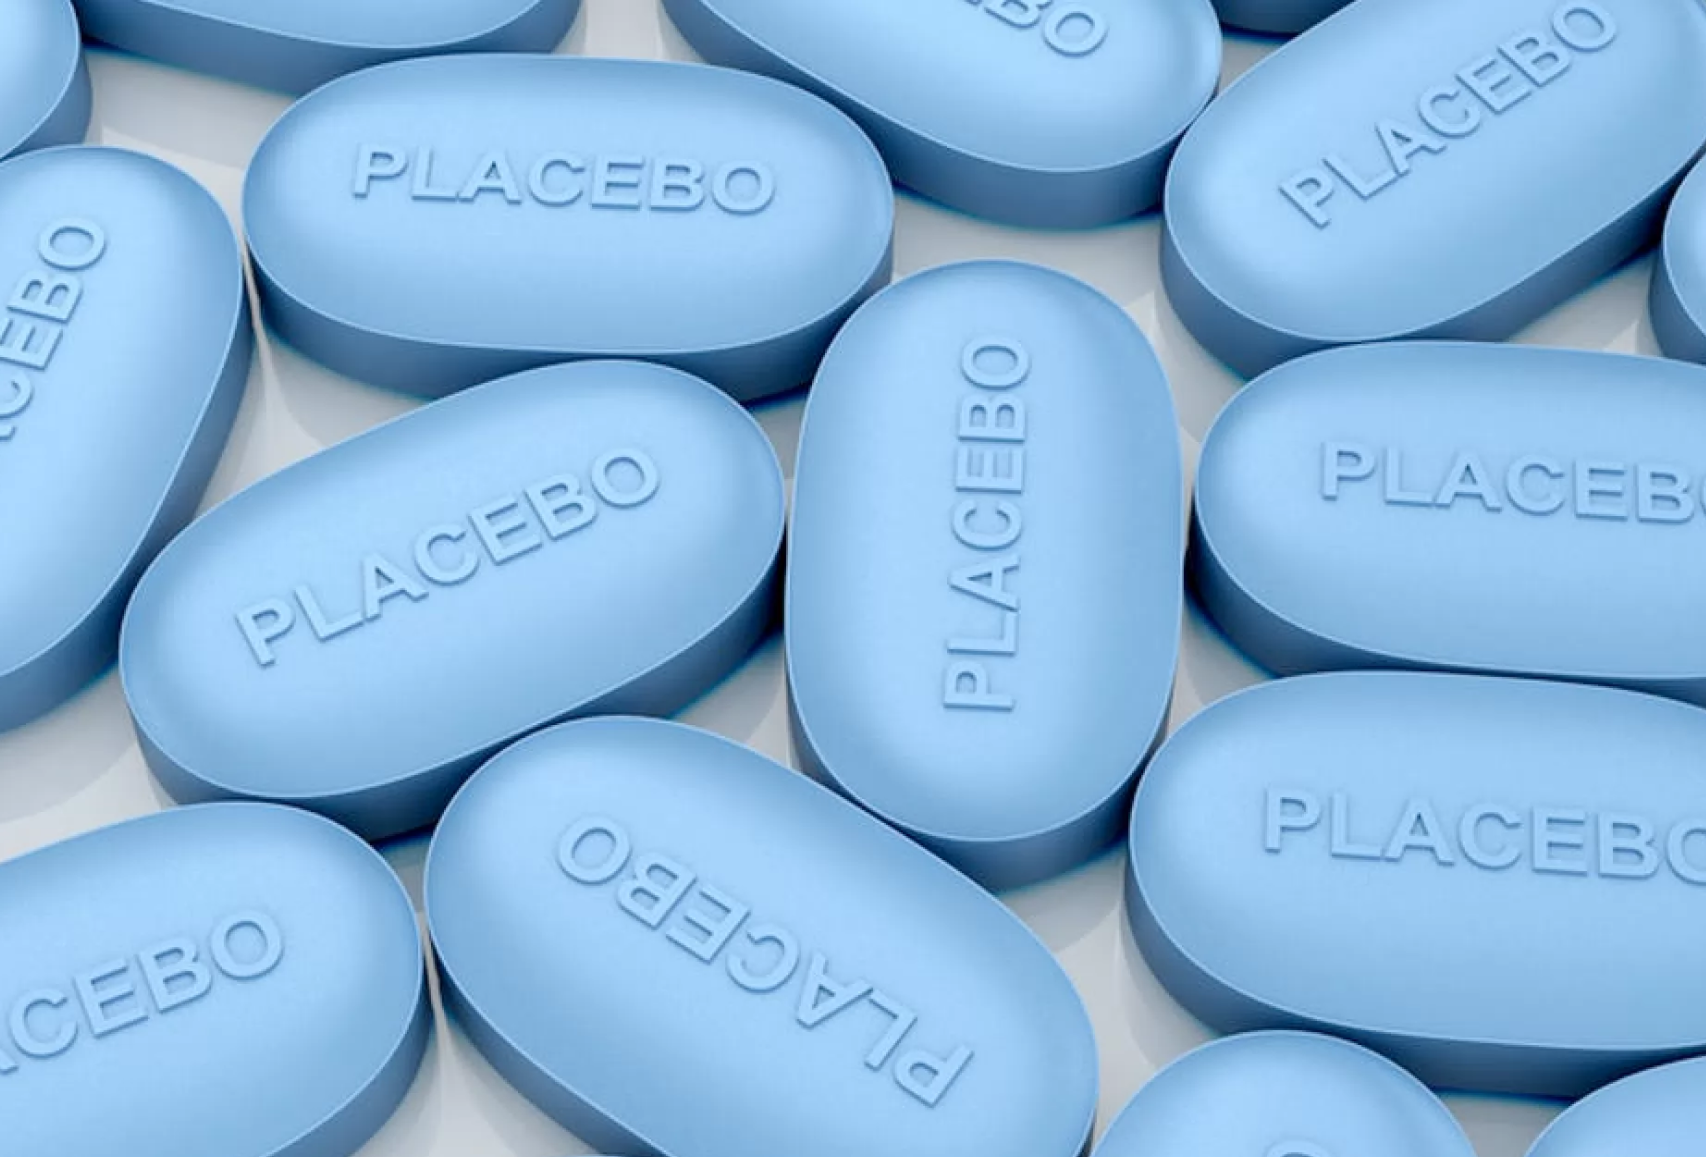 Что такое эффект плацебо и как он работает